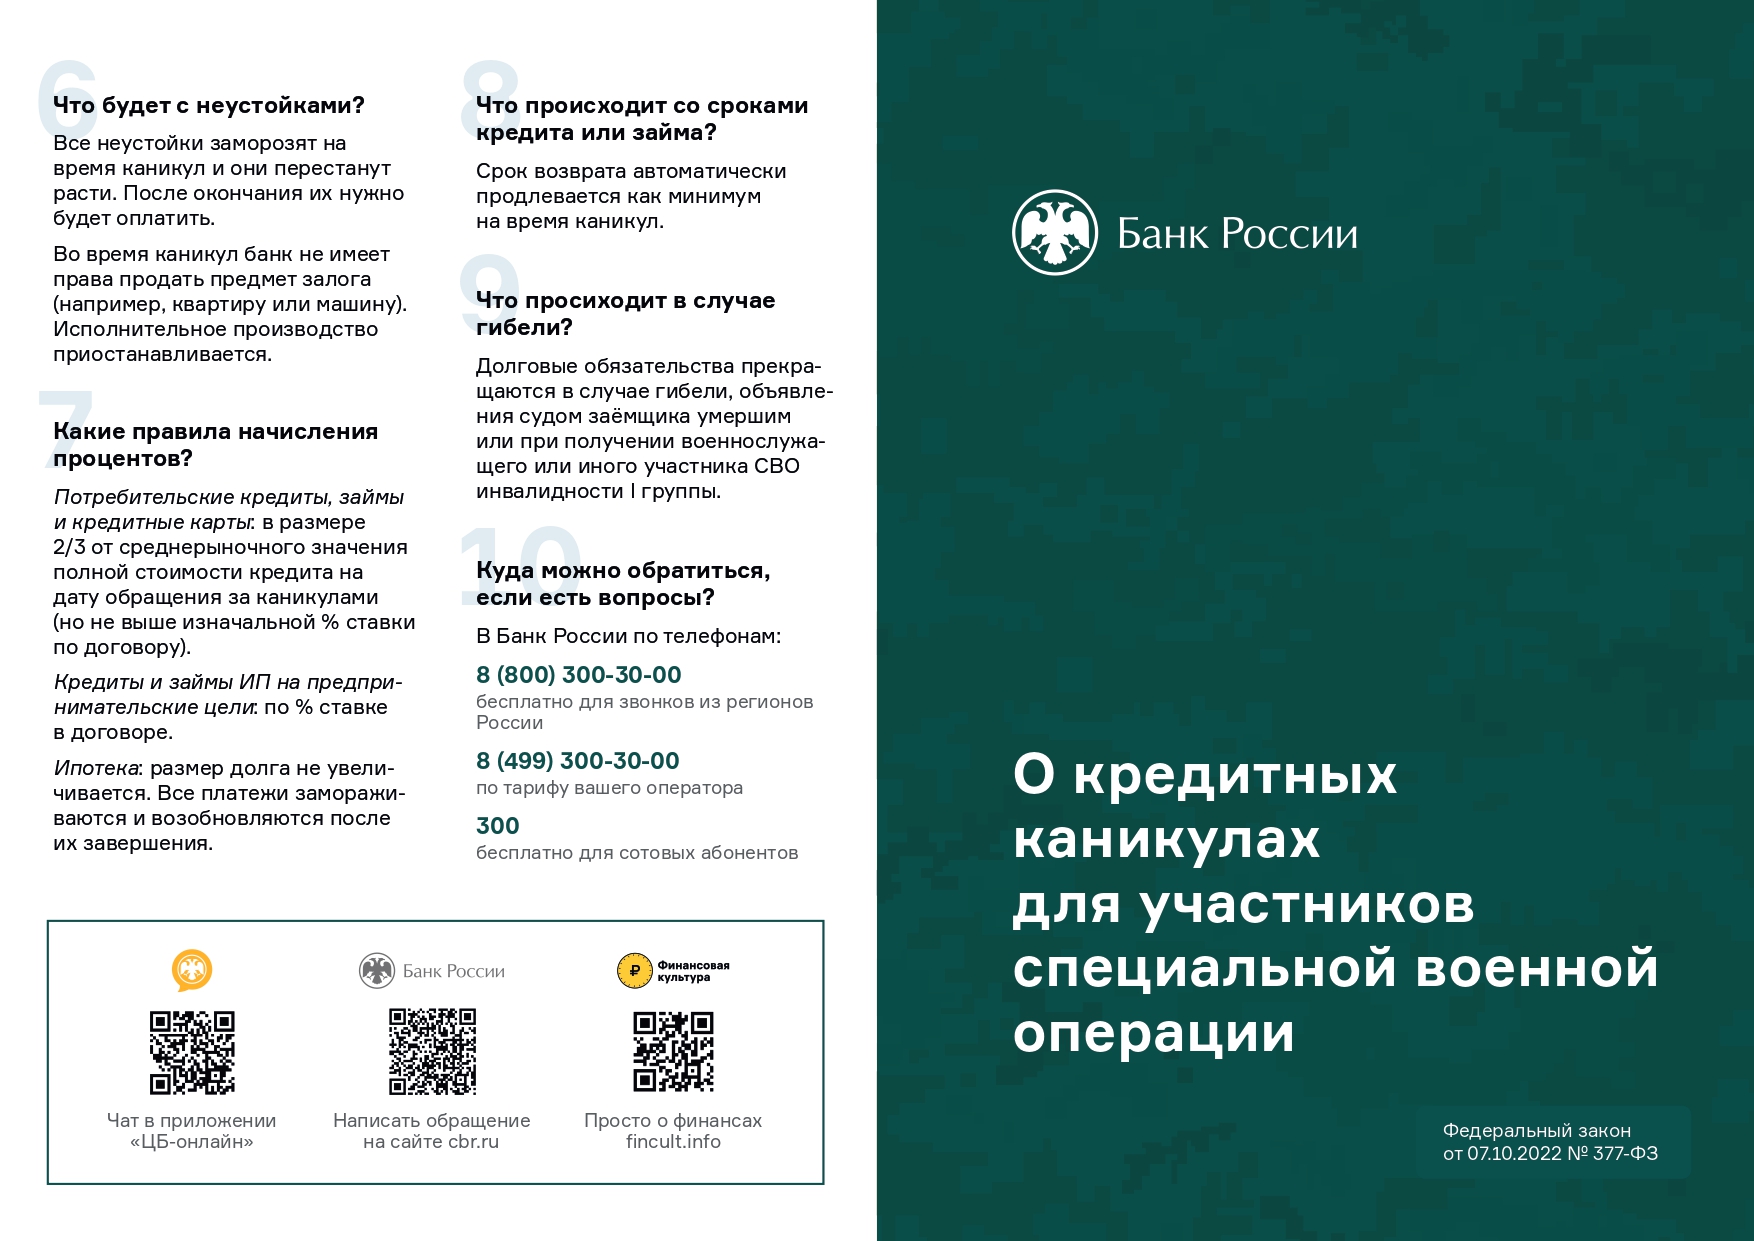 Приложение Брошюра КК для участников СВО Банка России 1